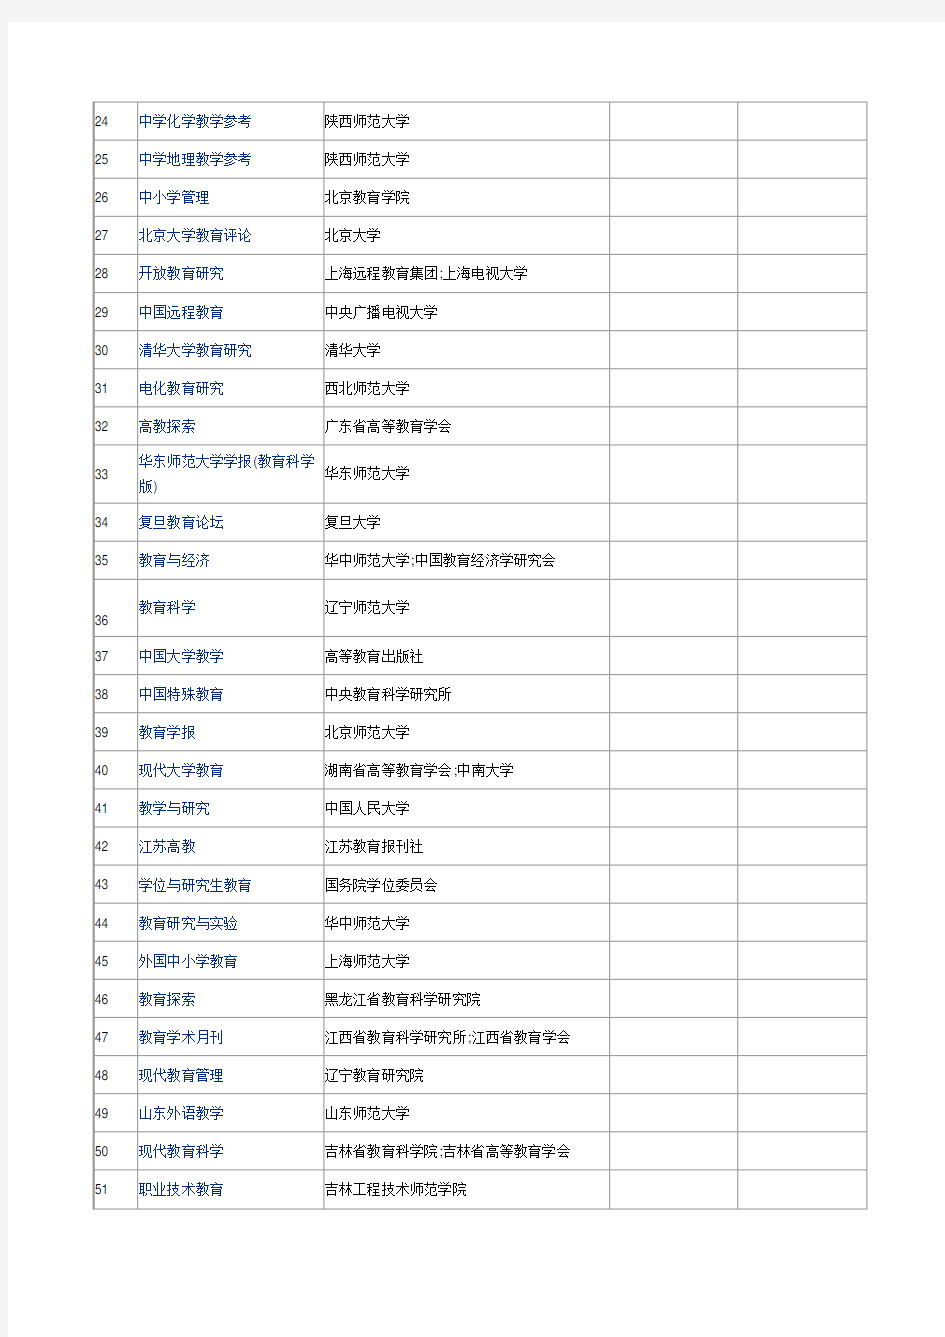 中国知网收录的教育类核心期刊